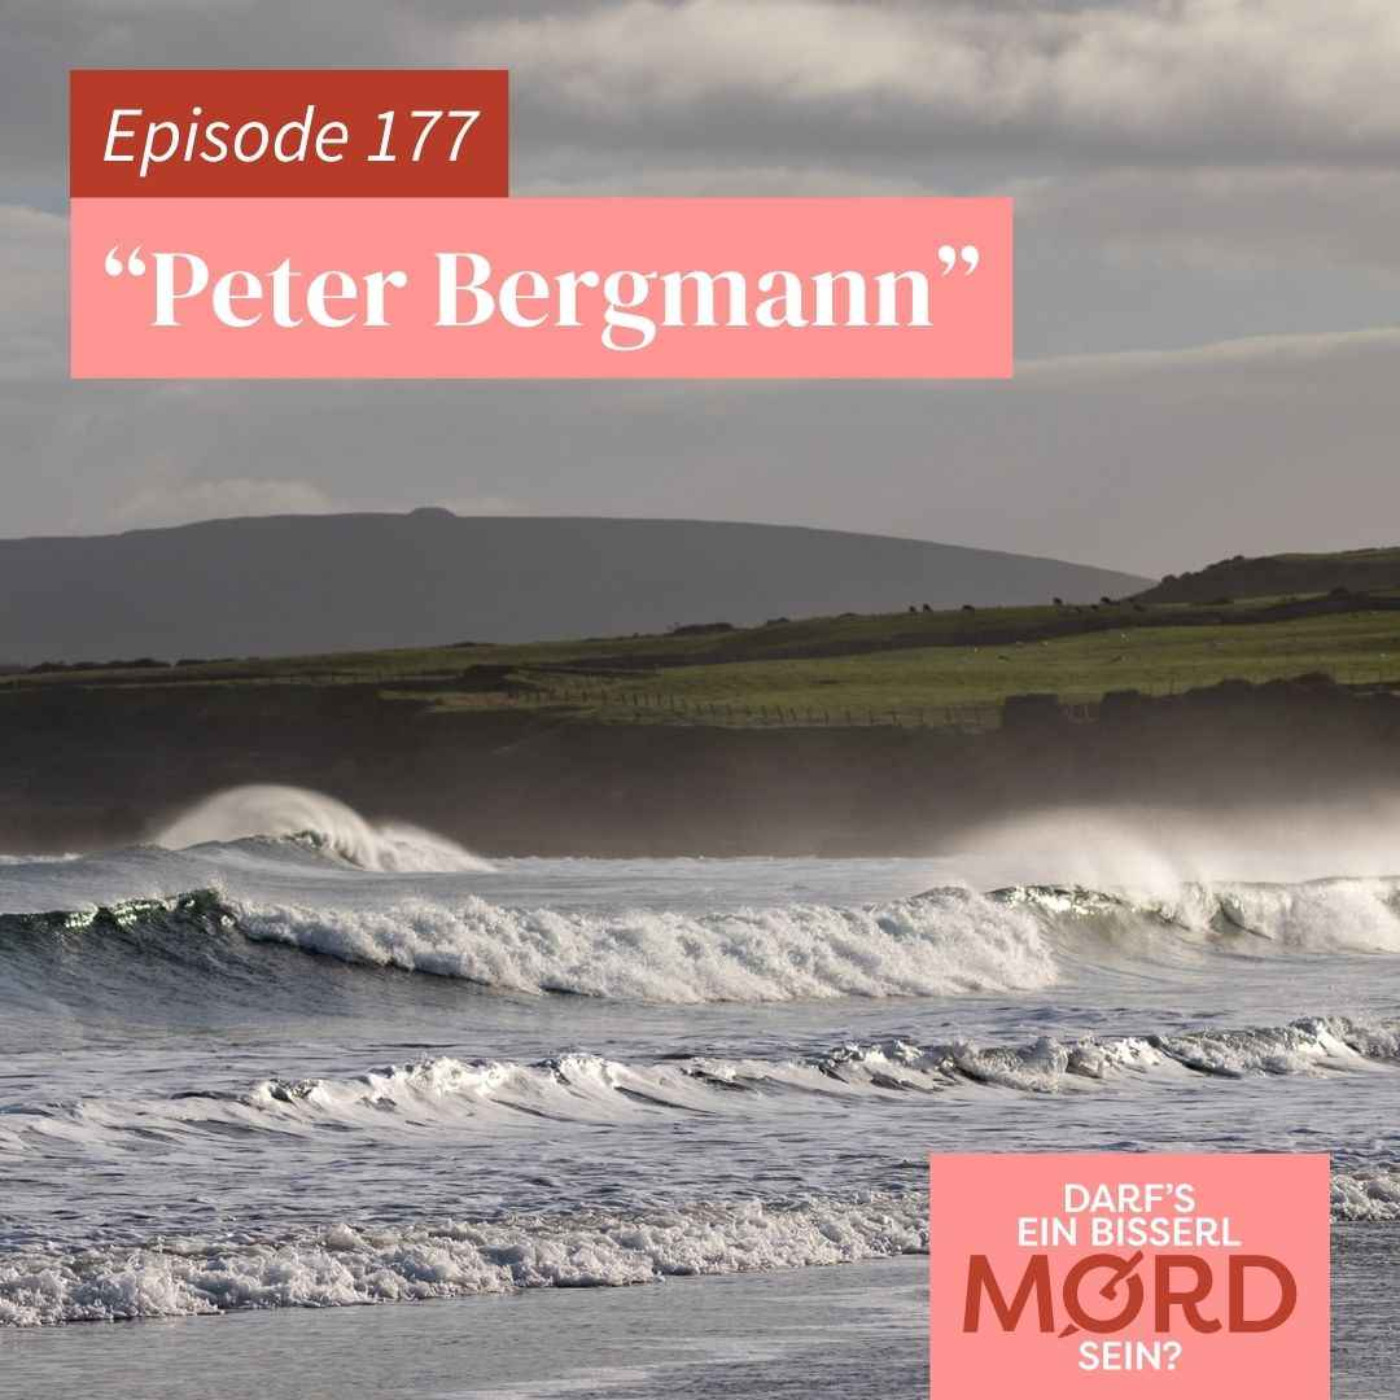 Episode 177: "Peter Bergmann"